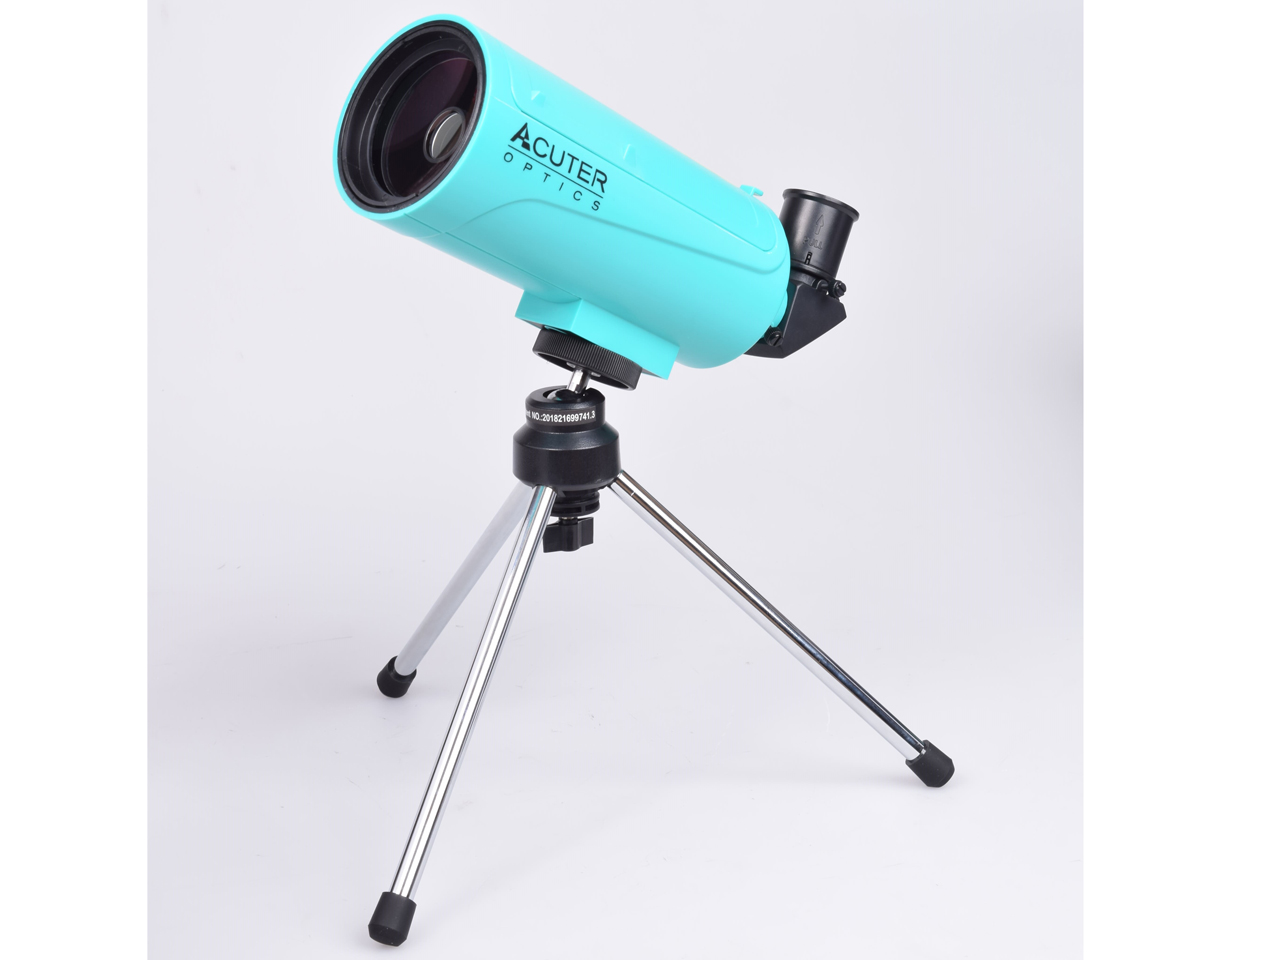 24753円 100％安い 望遠鏡 大人用 70mm 口径 カタディオプトリック リフレクター 双眼鏡 天体屈折 ホワイト